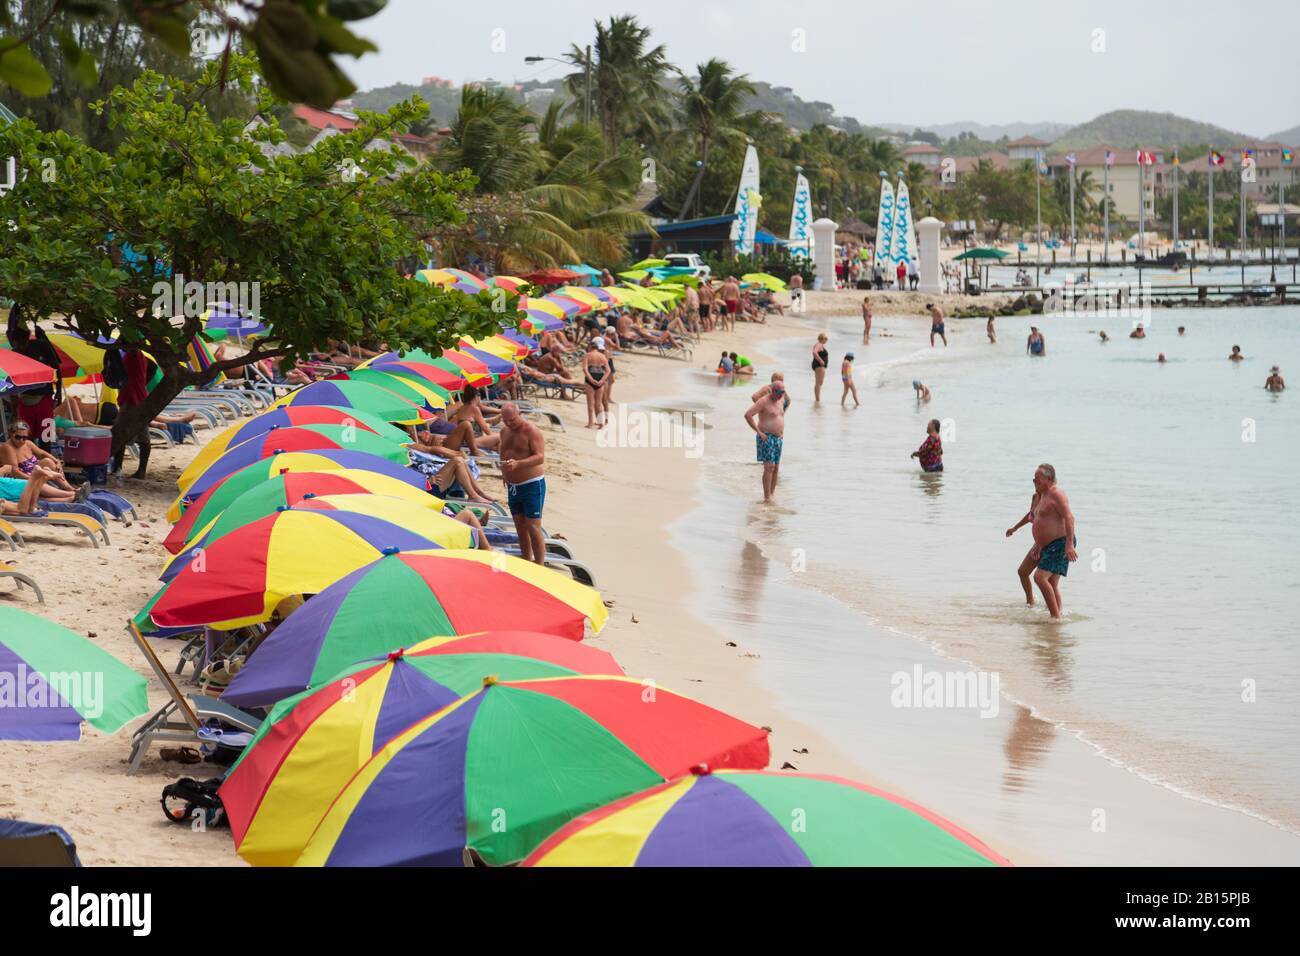 Viel touristische Aktivität und bunte Sonnenschirme, Spaß am Strand an einem beliebten Strand an einem hellen sonnigen Tag Stockfoto